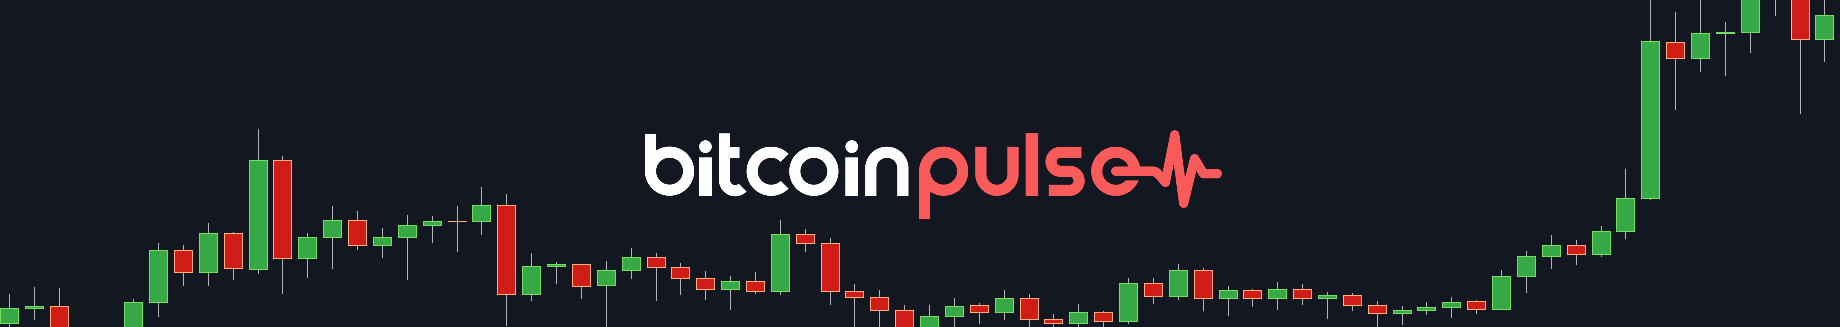 Can Bitcoin Bounce? - Bitcoin Pulse #111